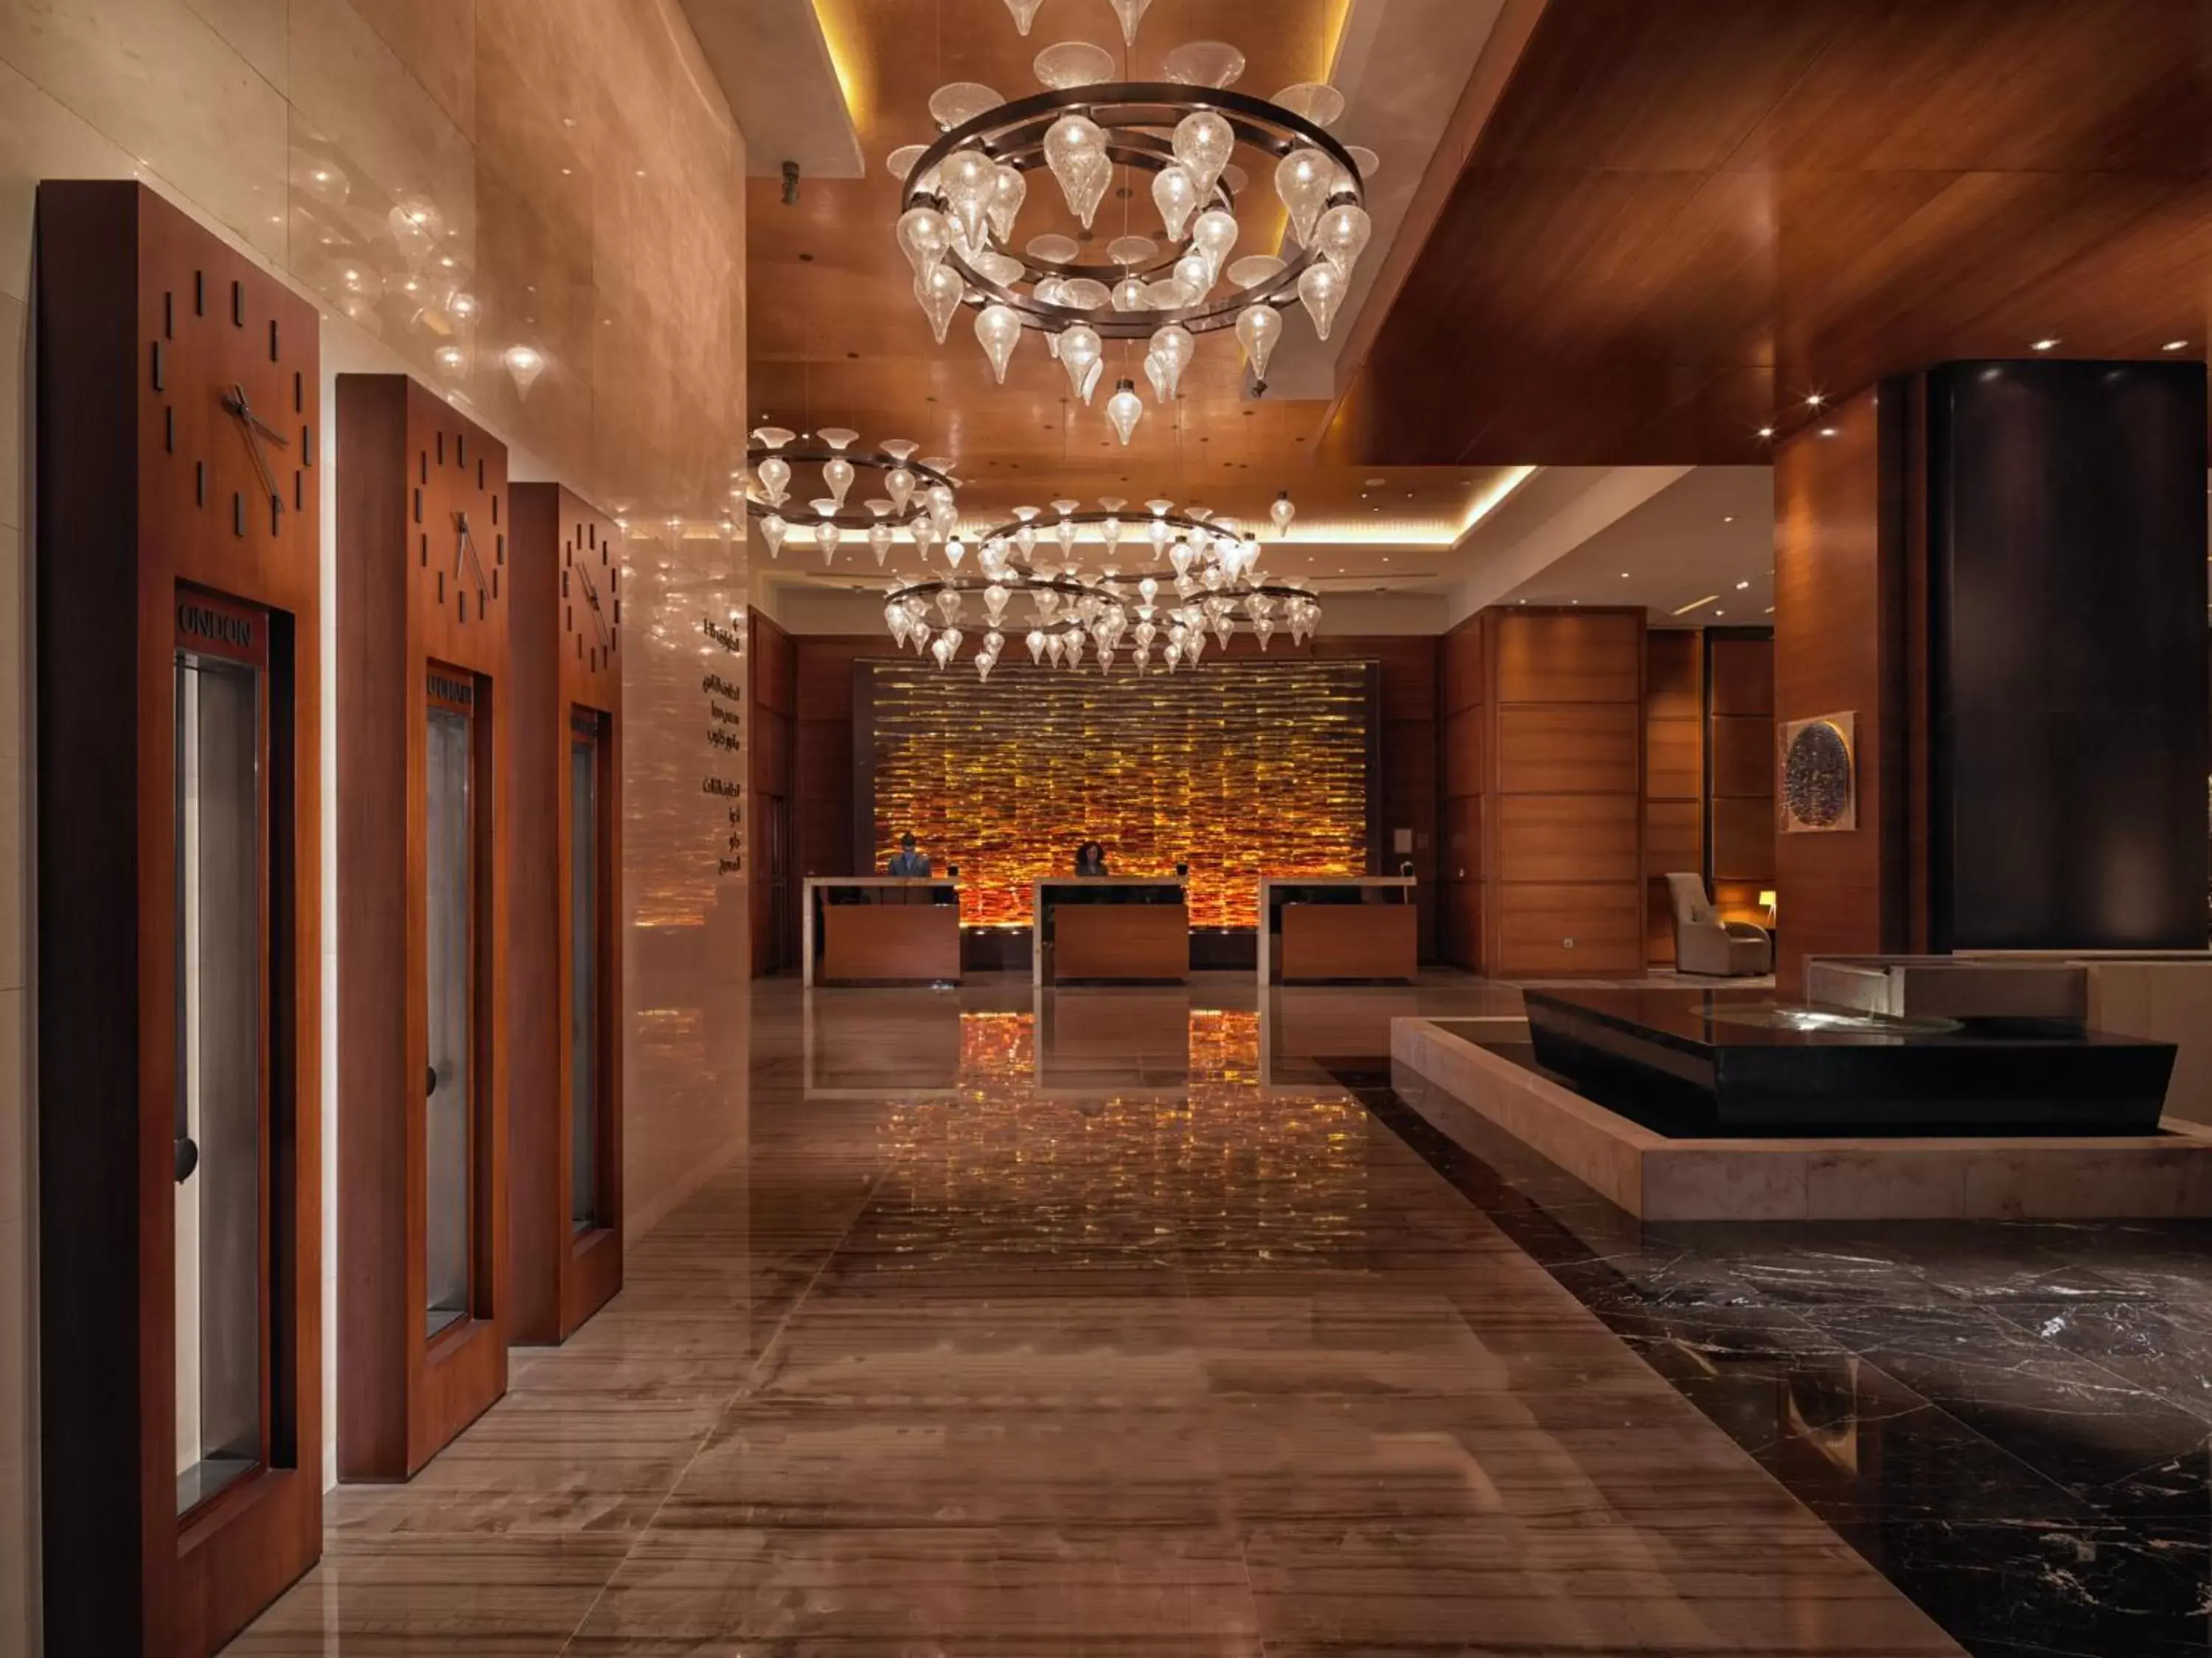 Lobby or reception, Lobby/Reception in Rosewood Abu Dhabi